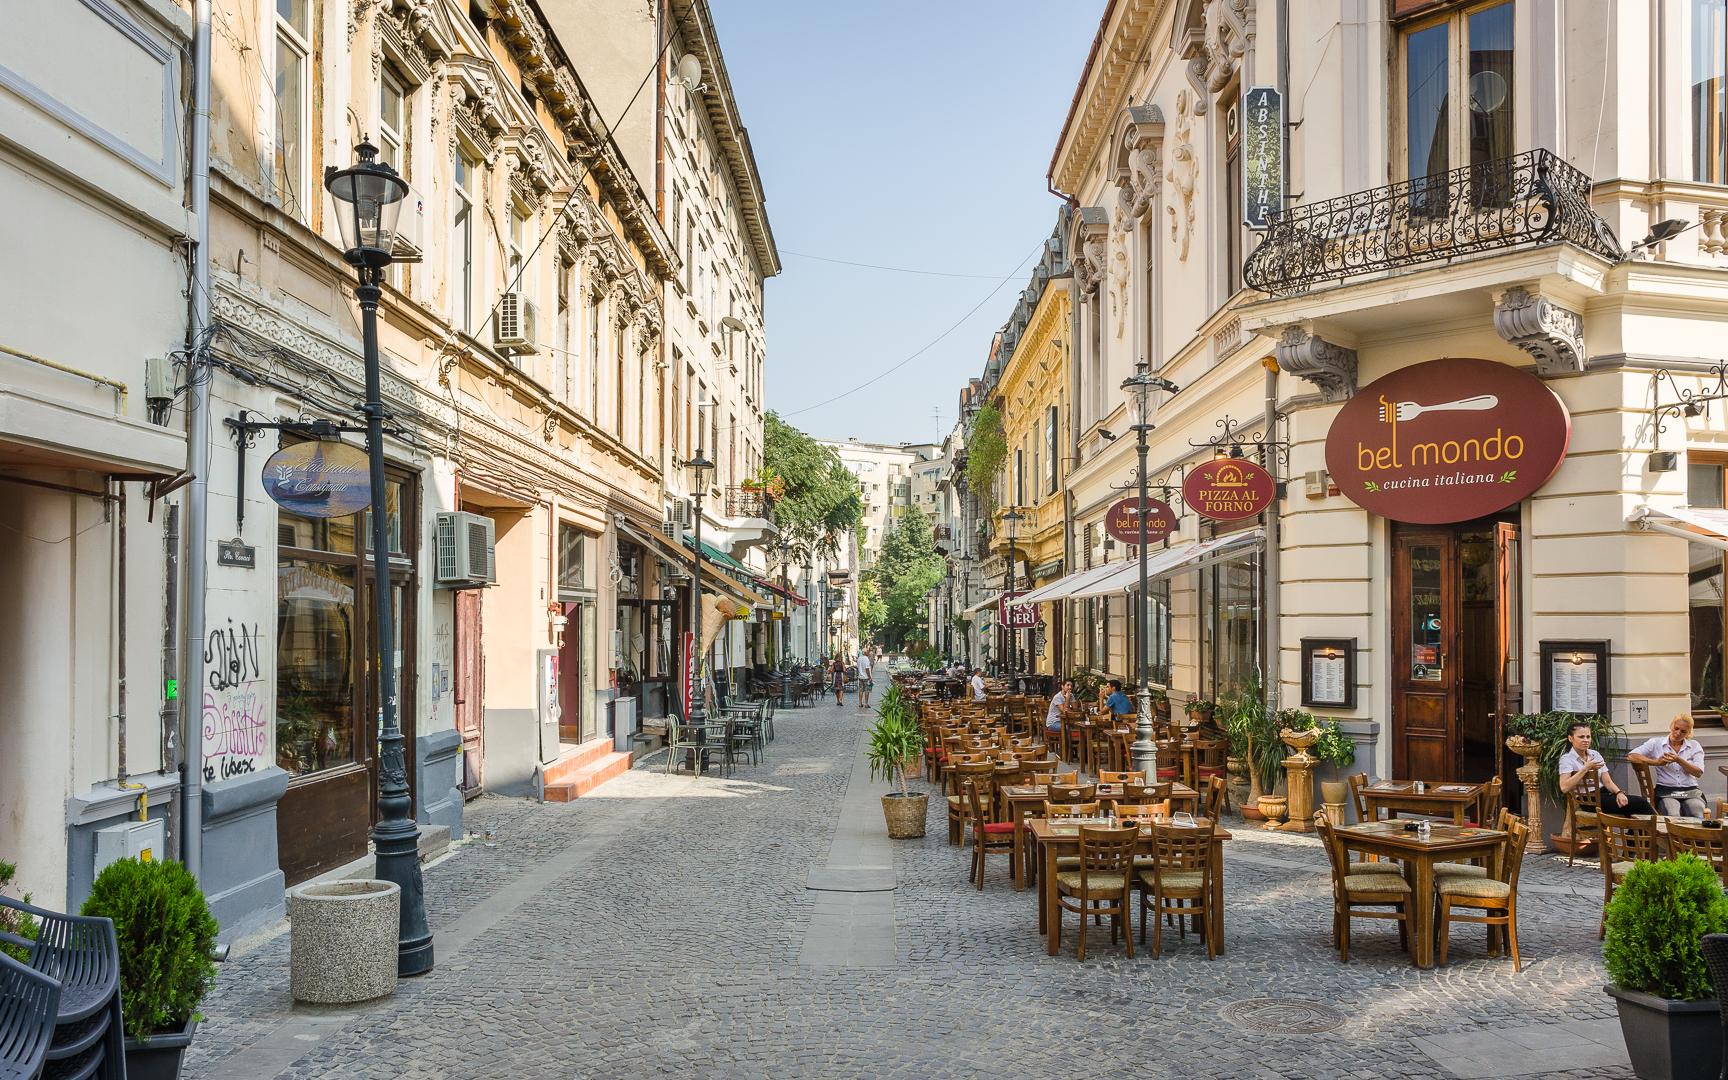 Πανοραμική φωτογραφία και αστικό τοπίο στην πρωτεύουσα της Ρουμανίας ξενοδοχεια βουκουρεστι